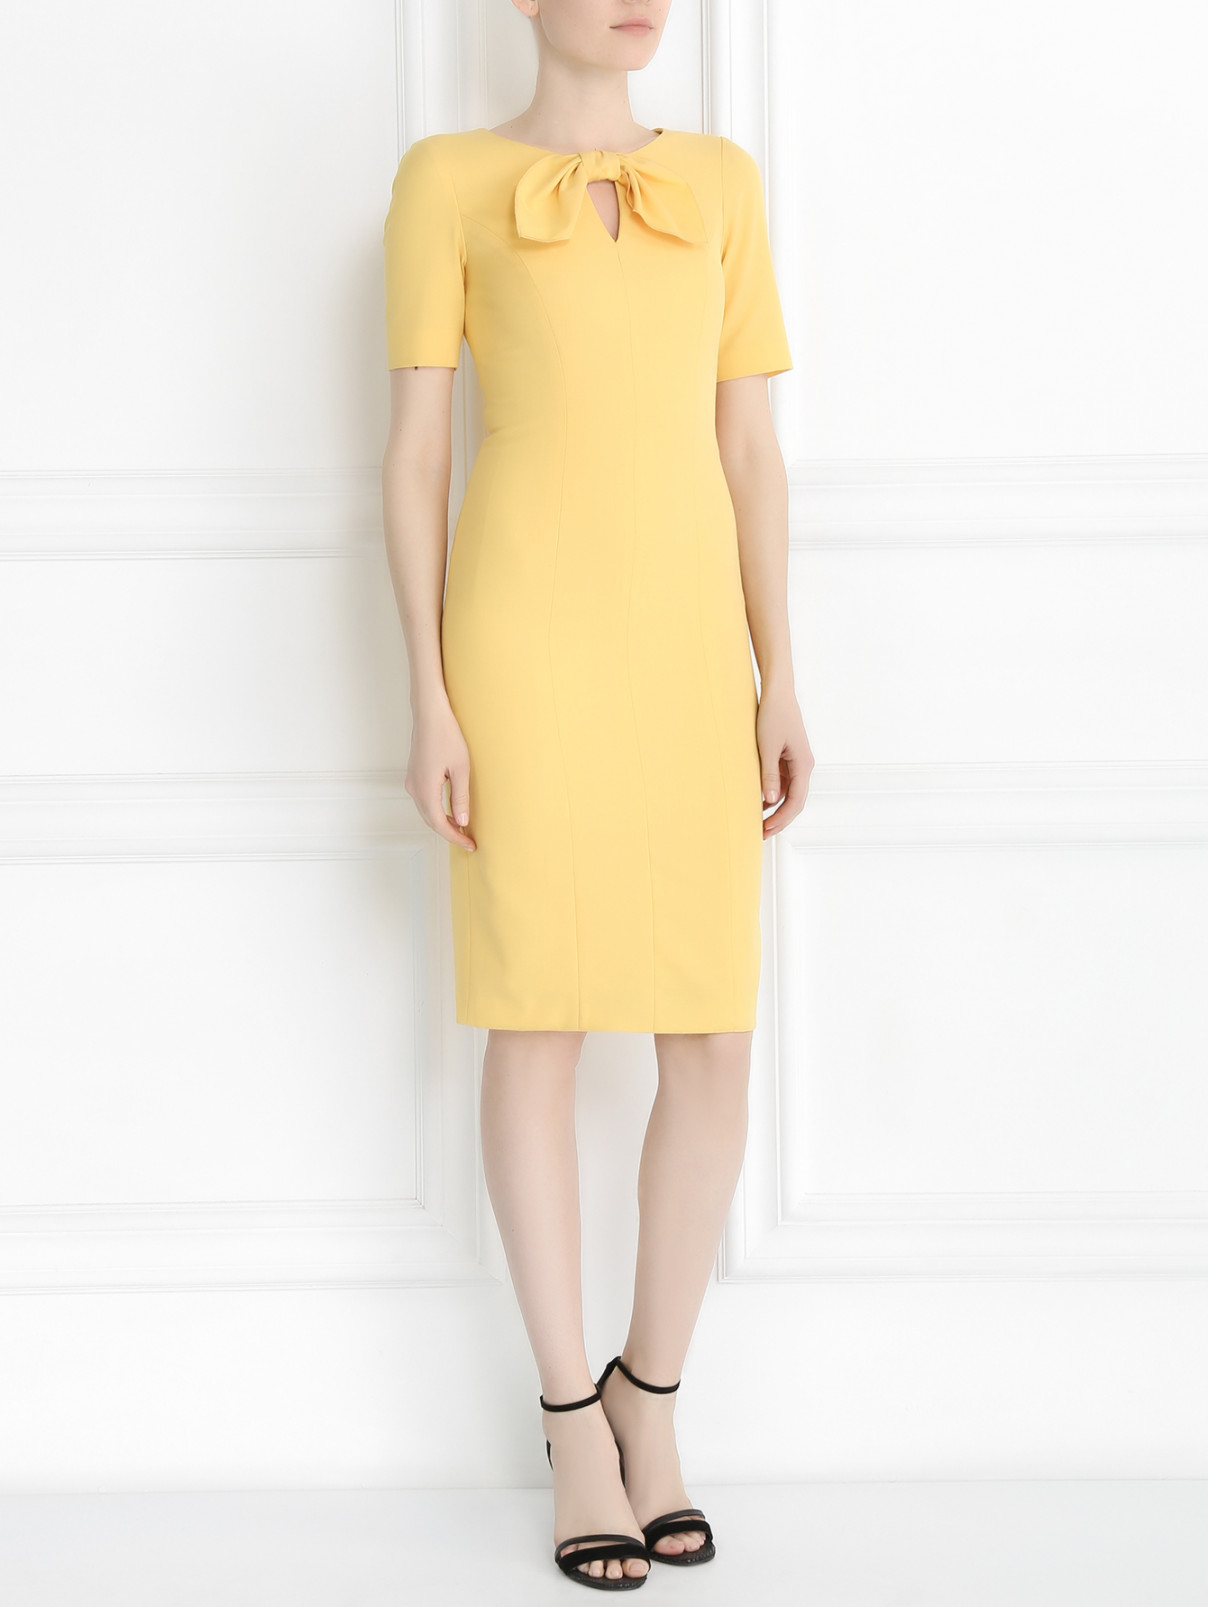 Платье-футляр из хлопка Moschino Cheap&Chic  –  Модель Общий вид  – Цвет:  Желтый